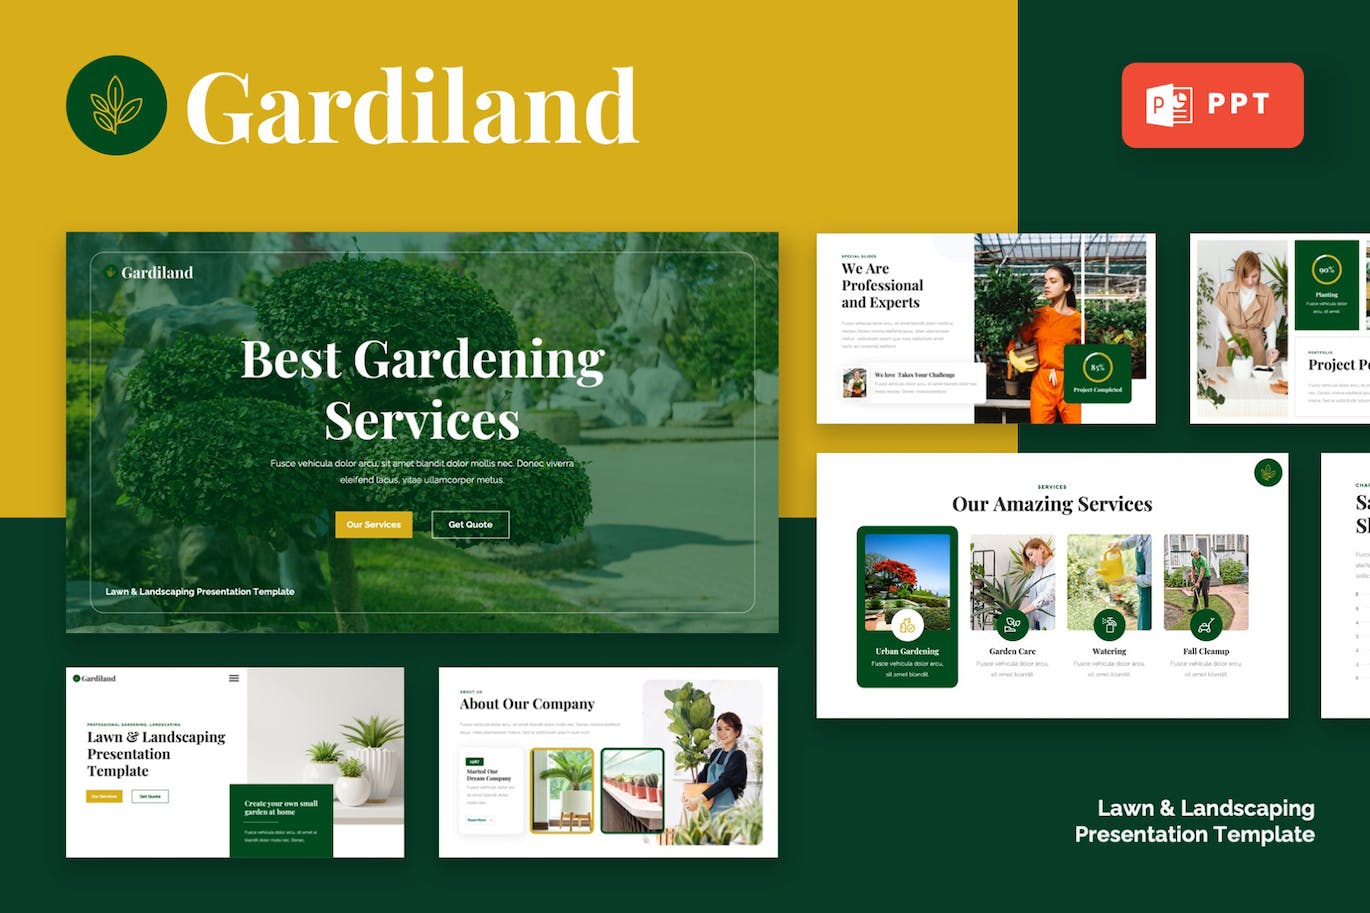 草坪和园林绿化PPT幻灯片设计模板 GARDILAND – Lawn & Landscaping Powerpoint Template 幻灯图表 第1张